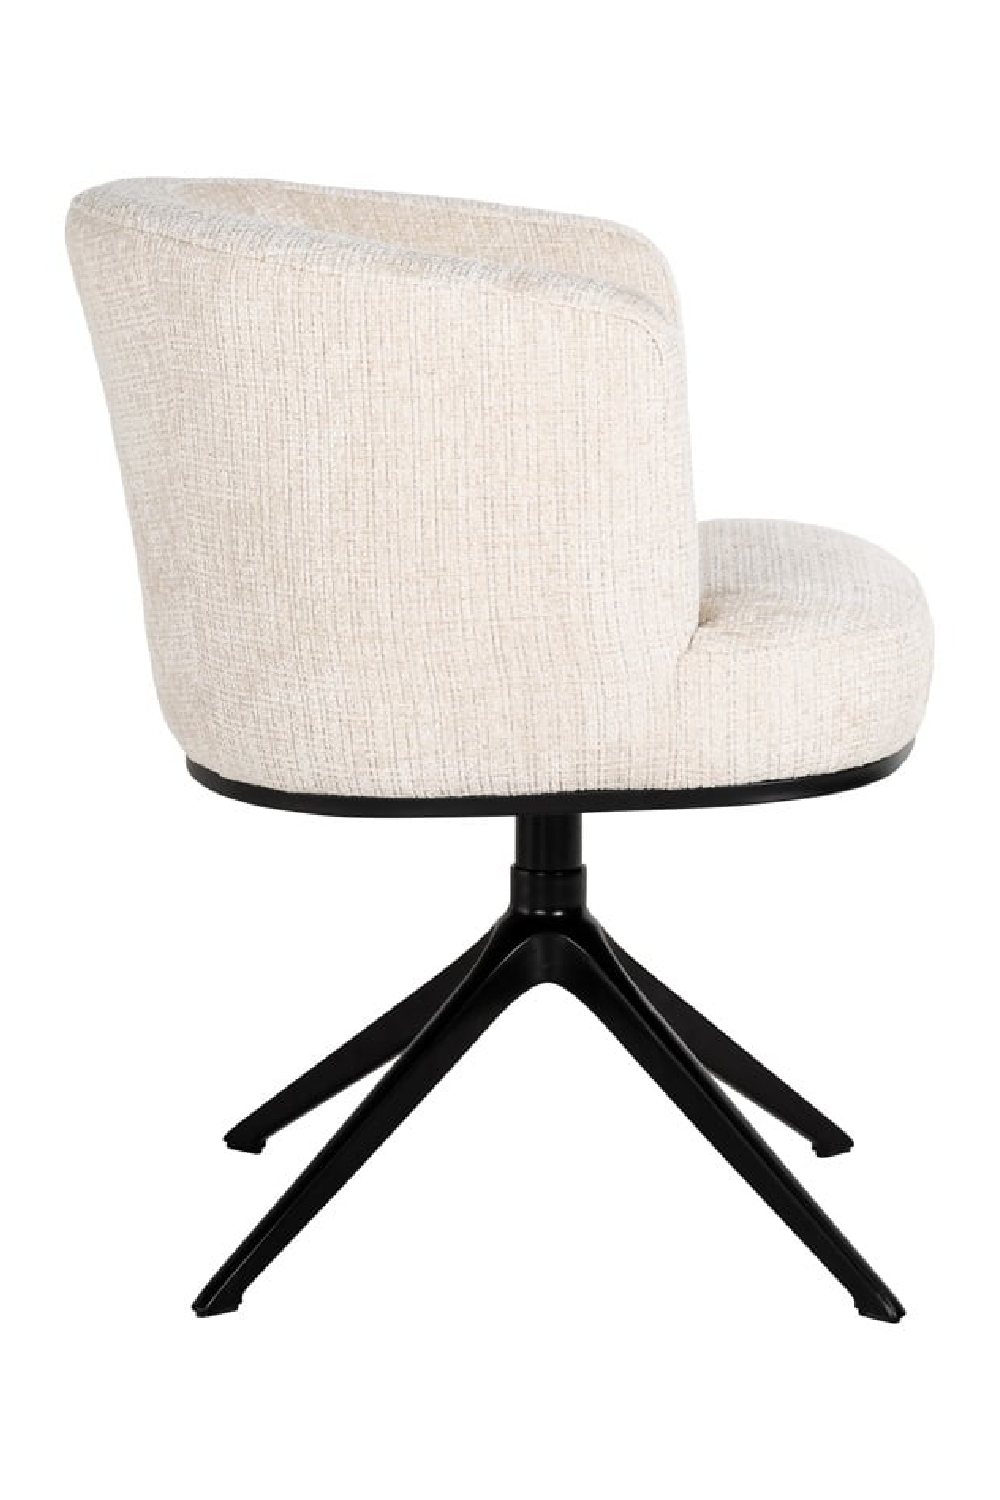 Curved Swivel Chair | OROA Cheyenne | Oroa.com